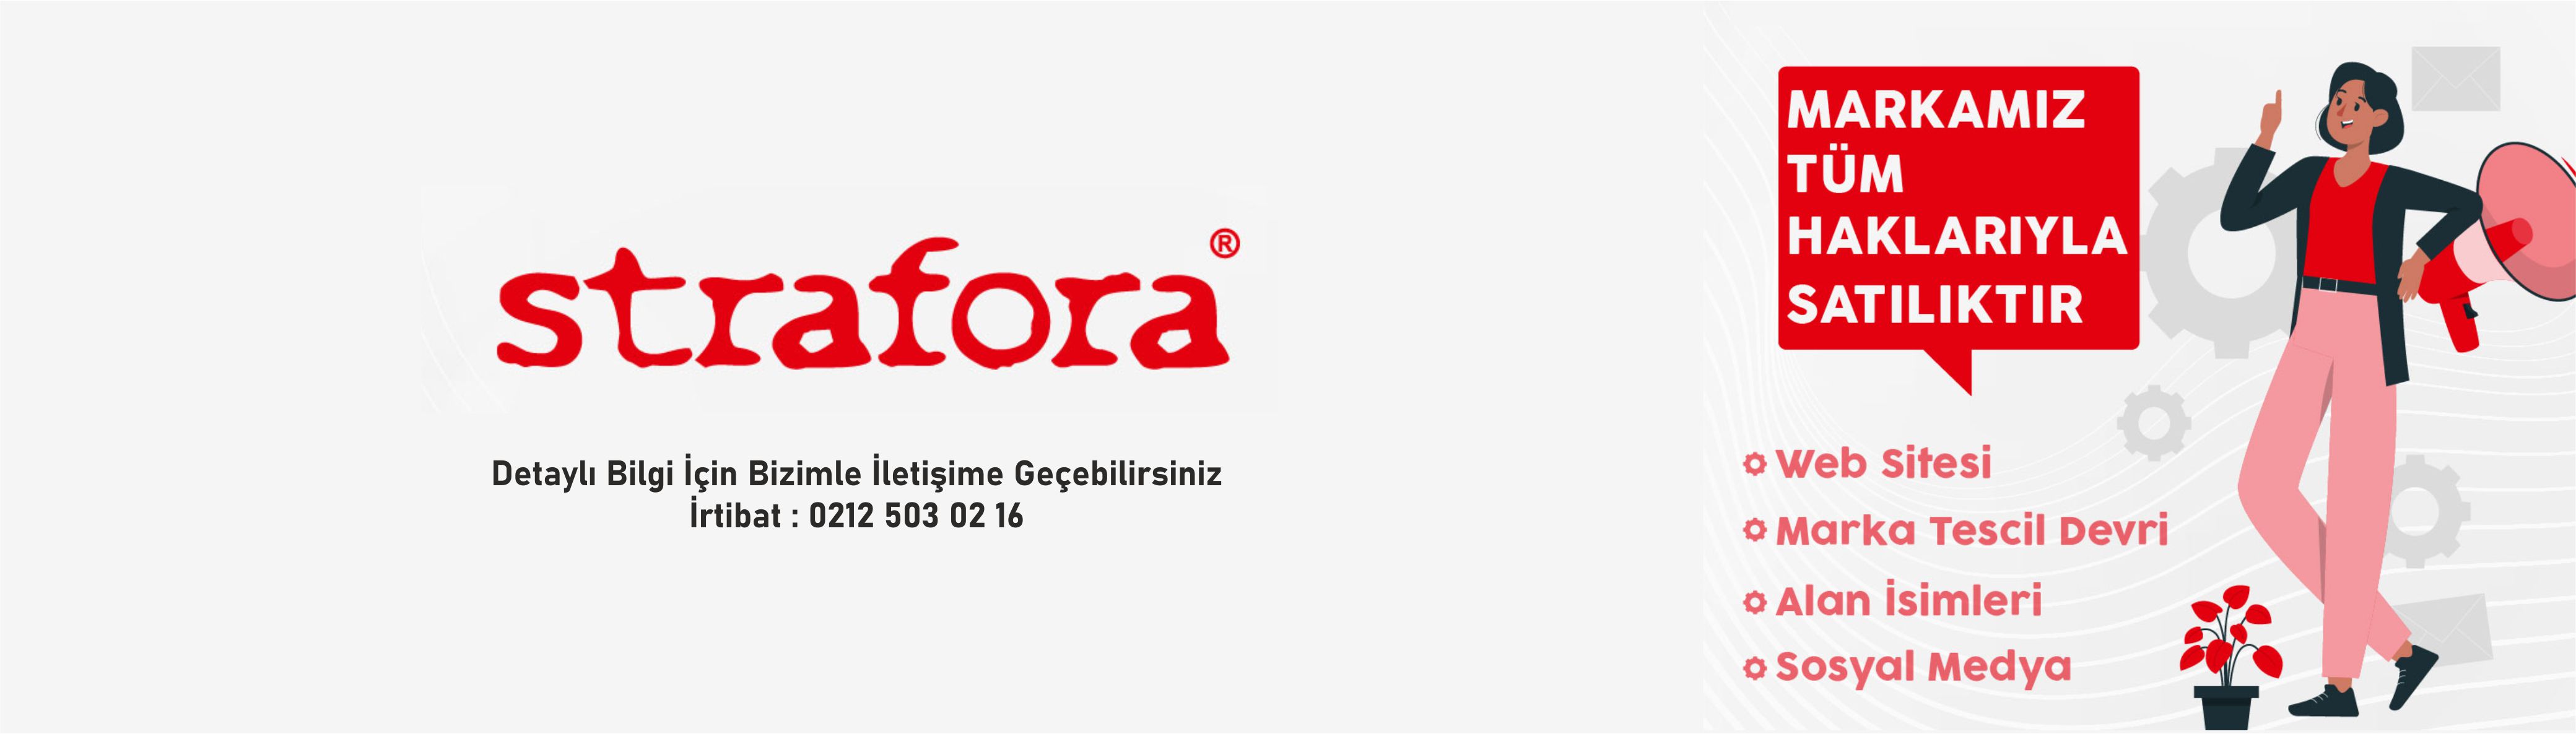 strafora-banner